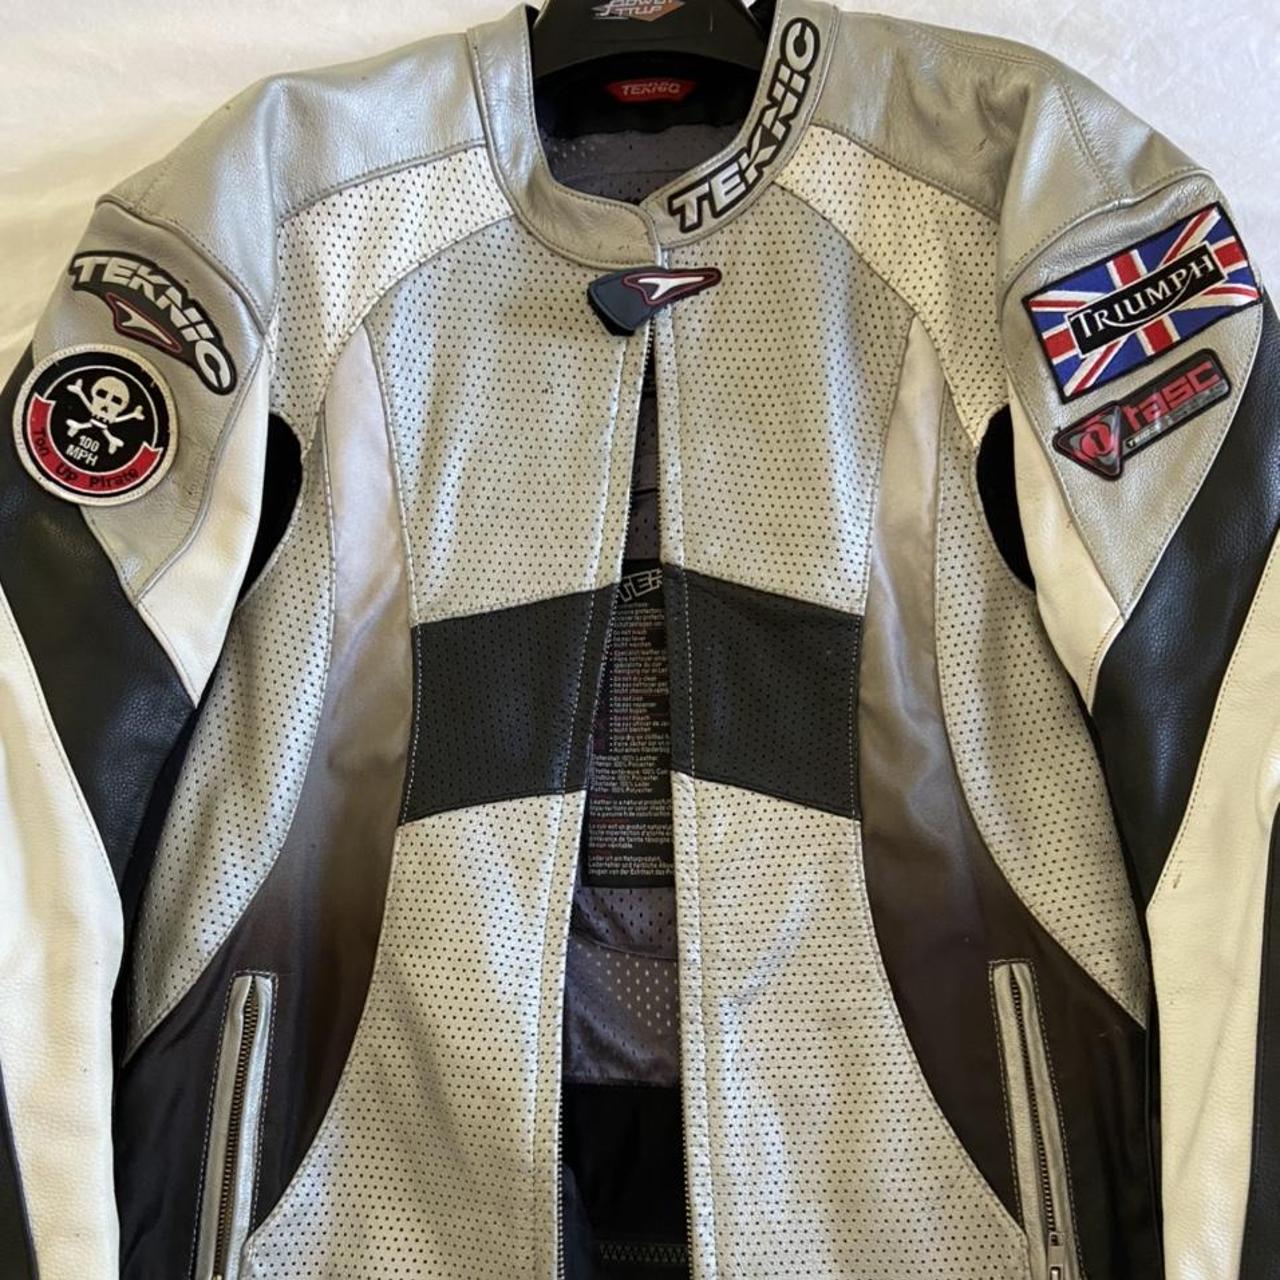 Leather TEKNIC Motorcycle Jacket Large Size,... - Depop